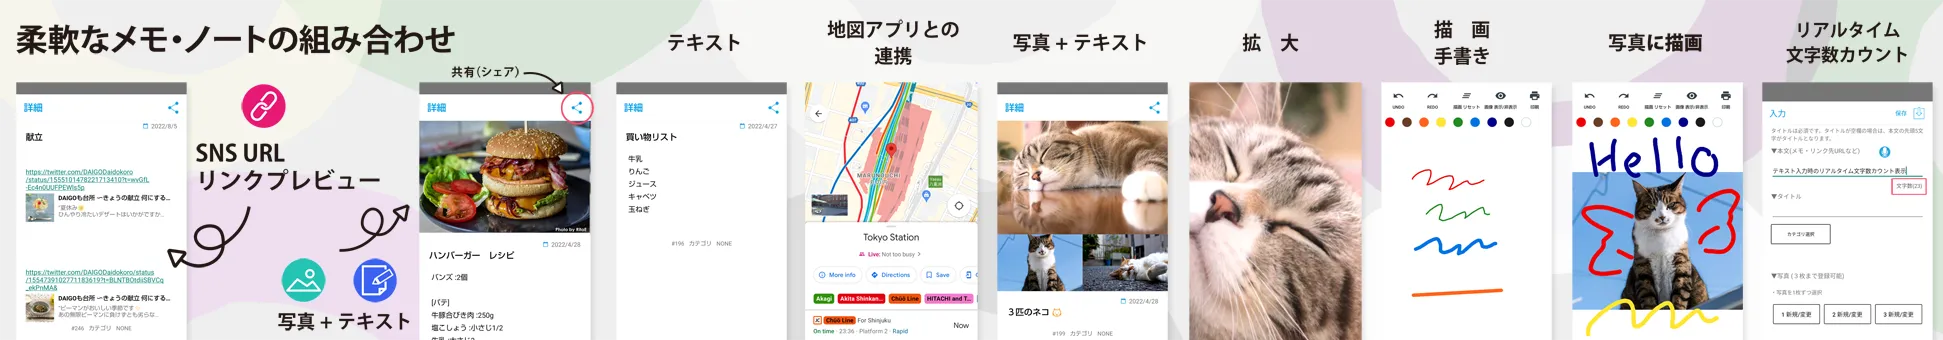 マイノートアプリ (Japan) App screen pc